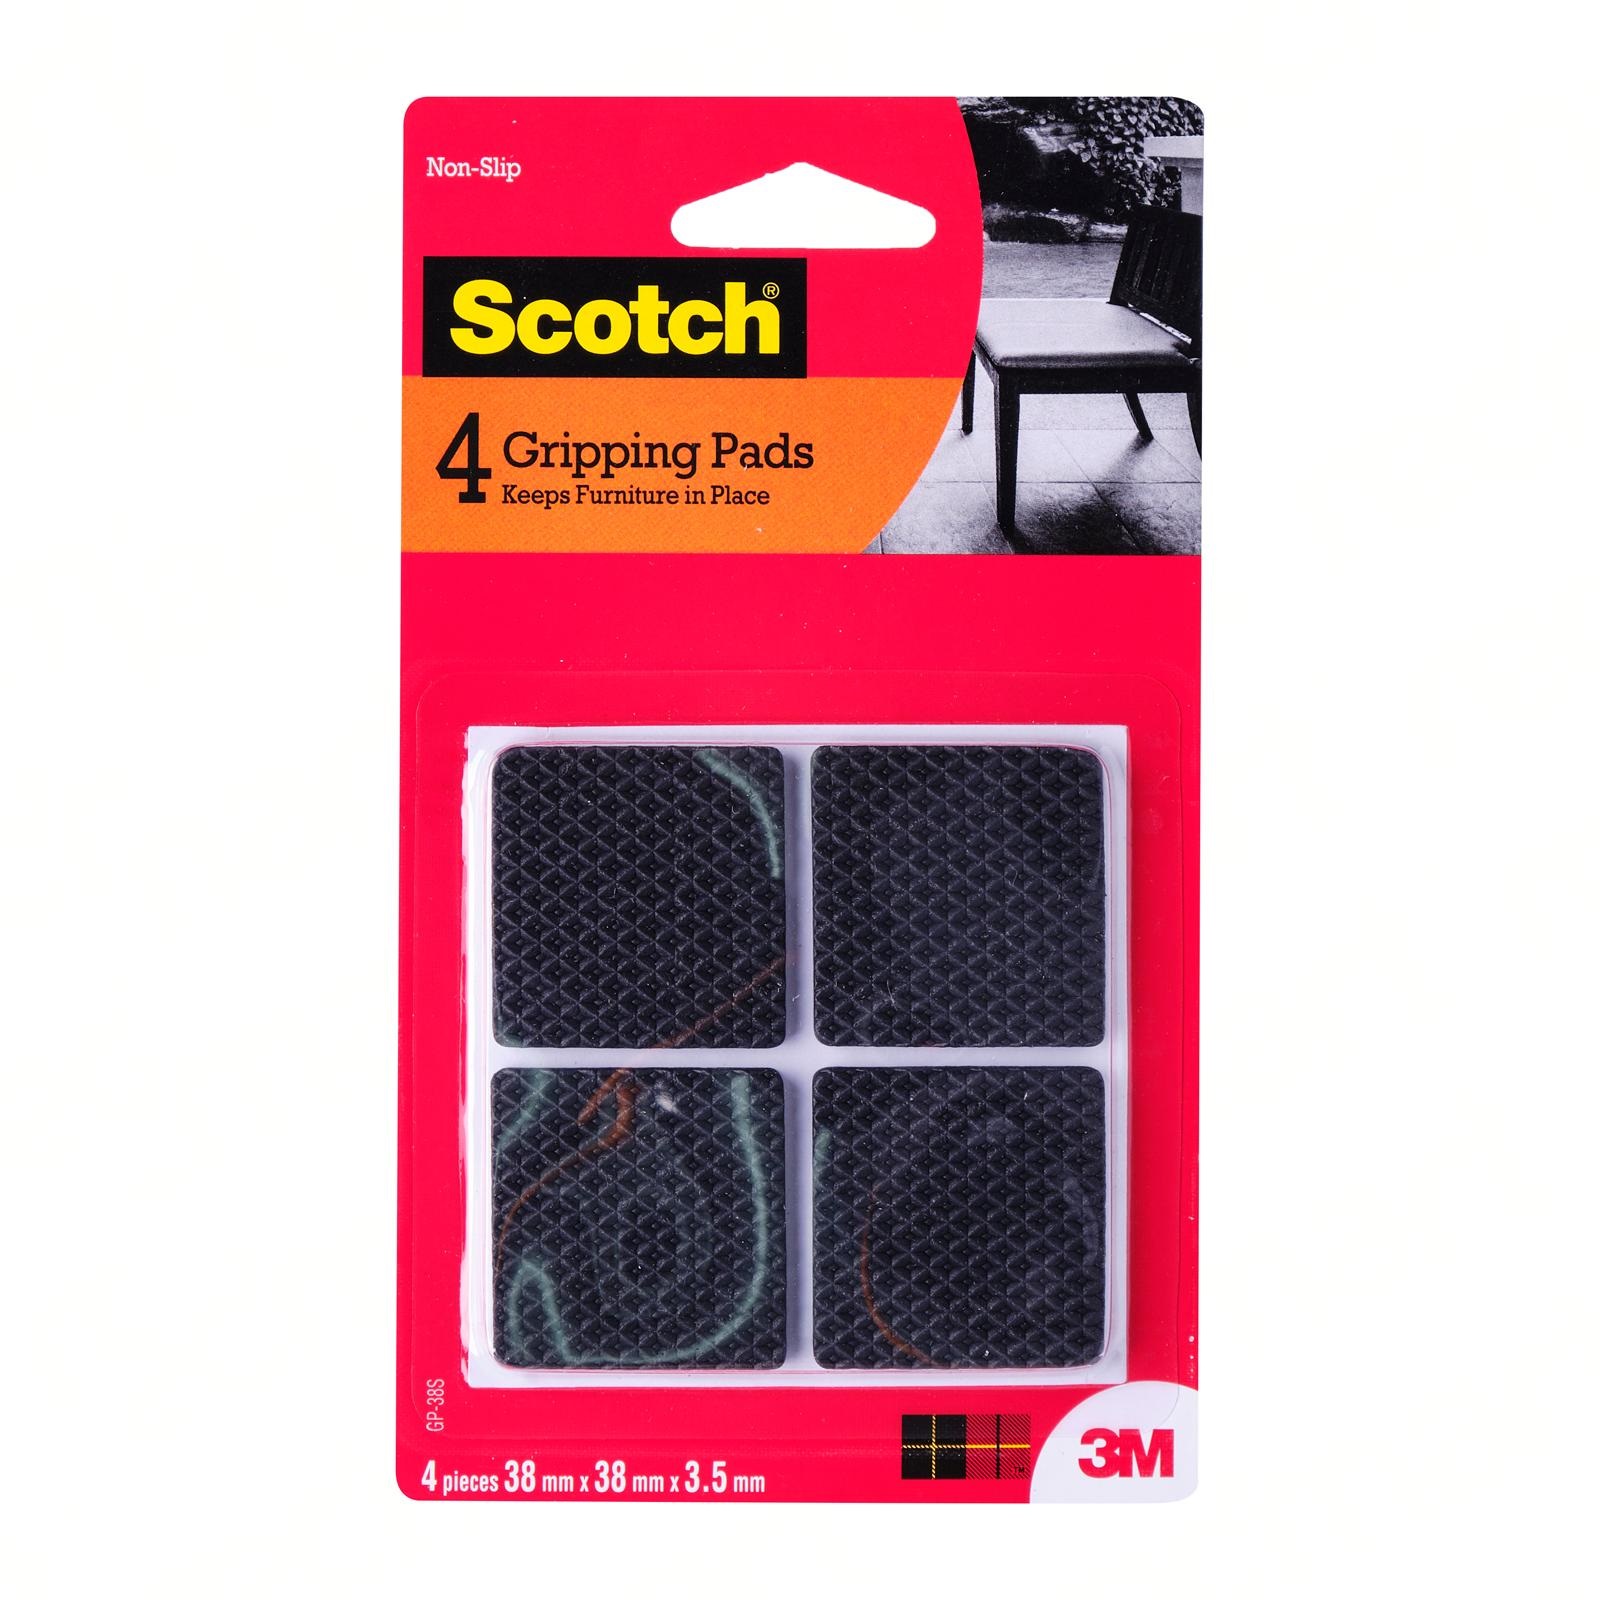 3M Scotch Gripper Pad Square Non-Slip 38MM X 38MM 4PC/Pack